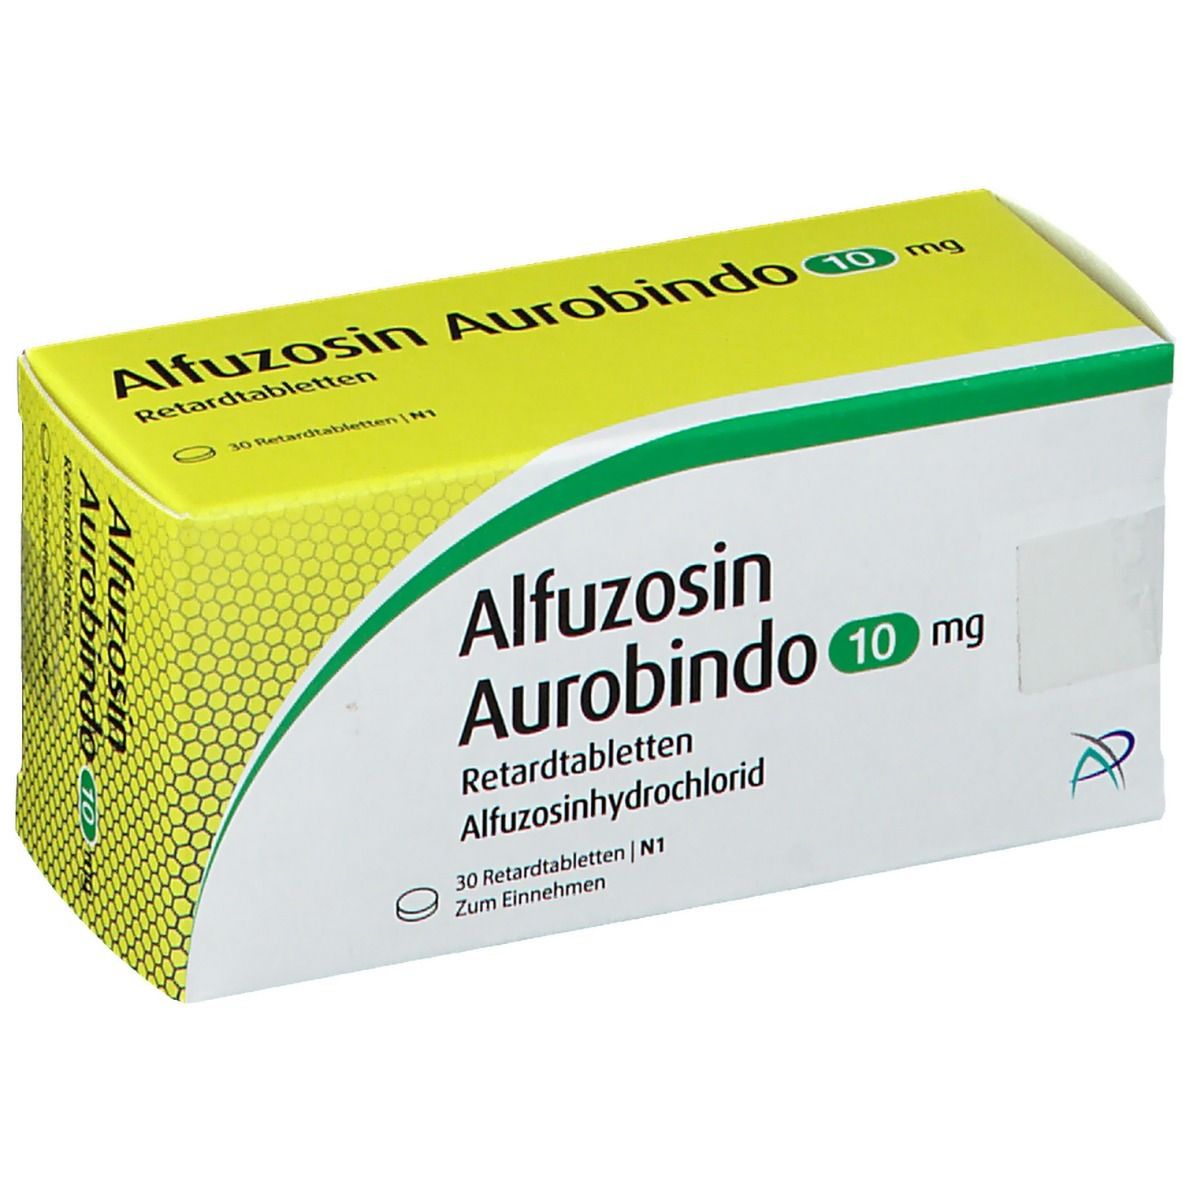 Alfuzosin Aurobindo 10 mg 30 St mit dem E-Rezept kaufen - SHOP APOTHEKE